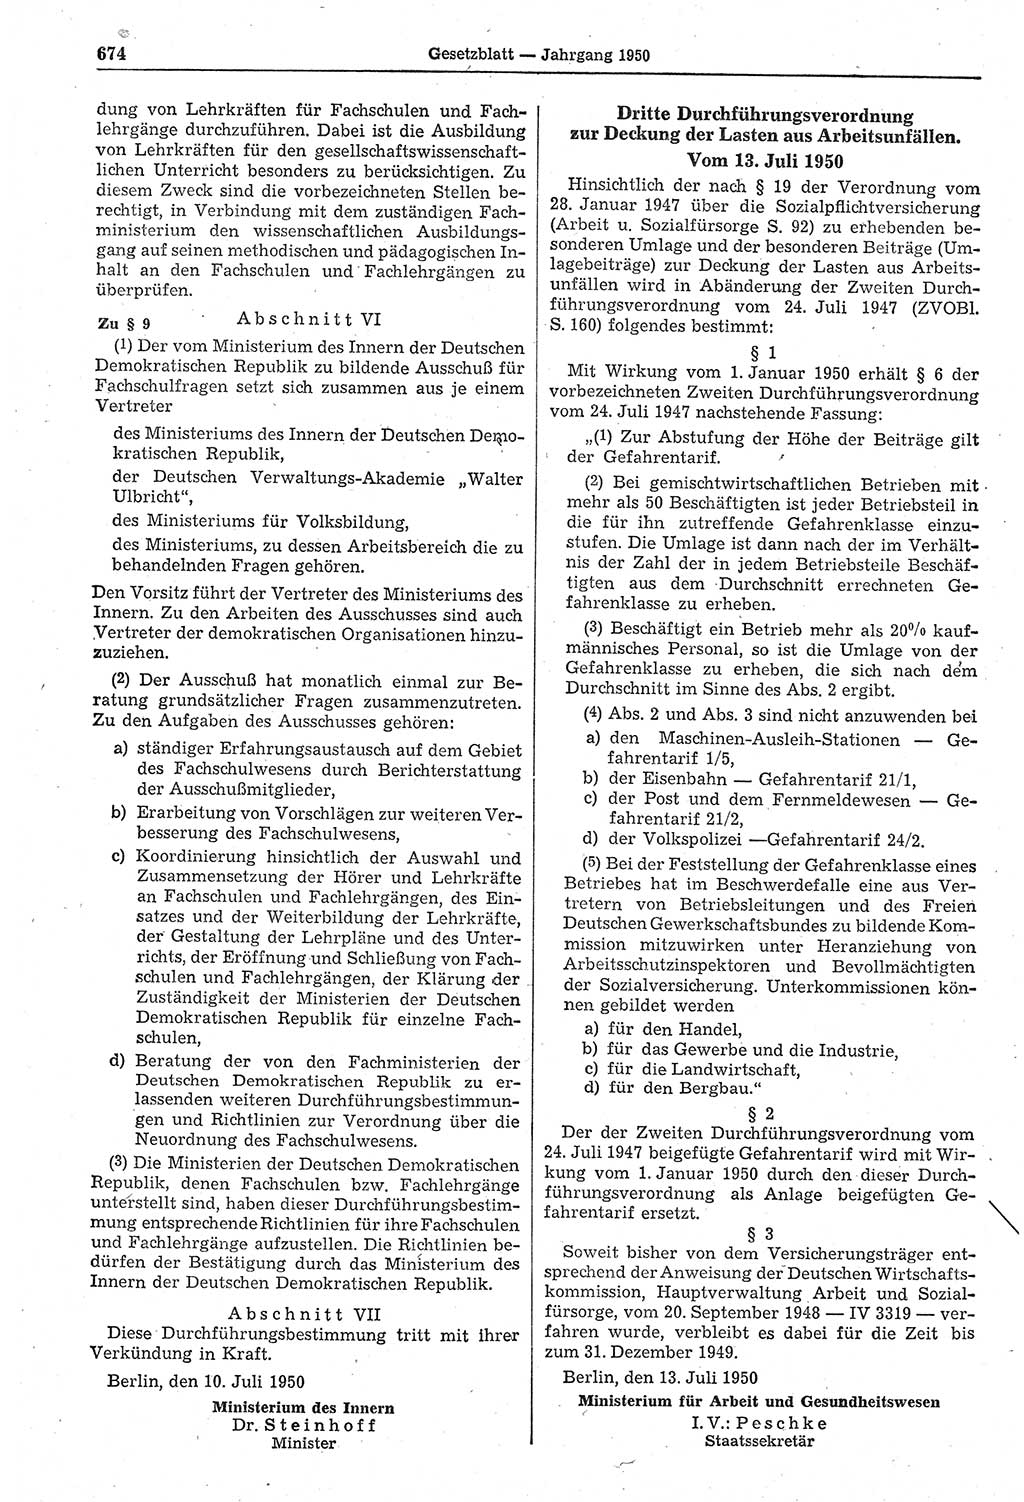 Gesetzblatt (GBl.) der Deutschen Demokratischen Republik (DDR) 1950, Seite 674 (GBl. DDR 1950, S. 674)